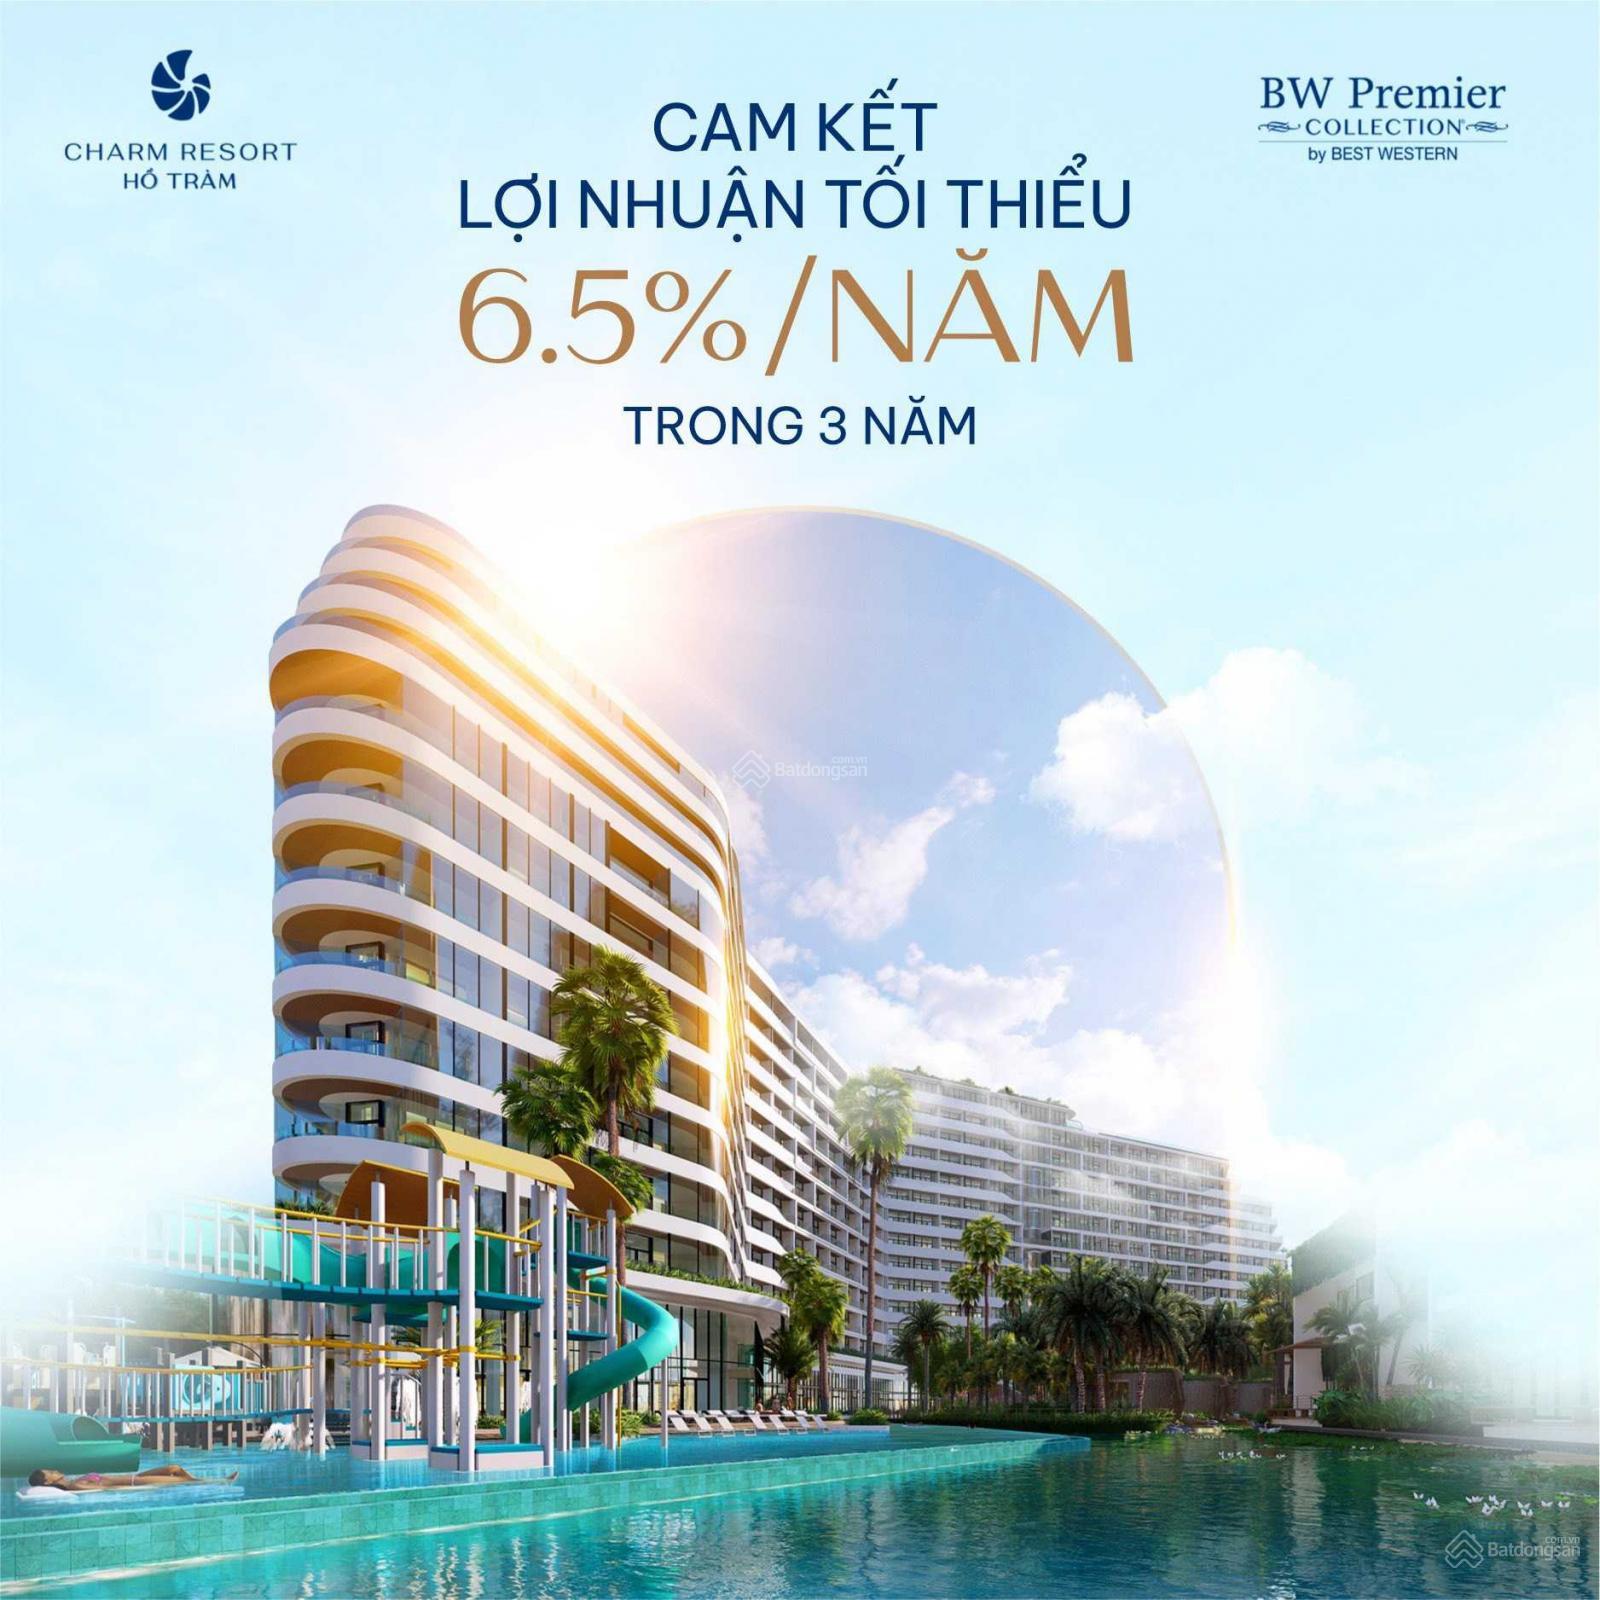 Liên hệ ngay Hậu 0988.57.82.97 để nhận ngay ưu đãi lớn từ dự án Charm Resort Hồ Tràm